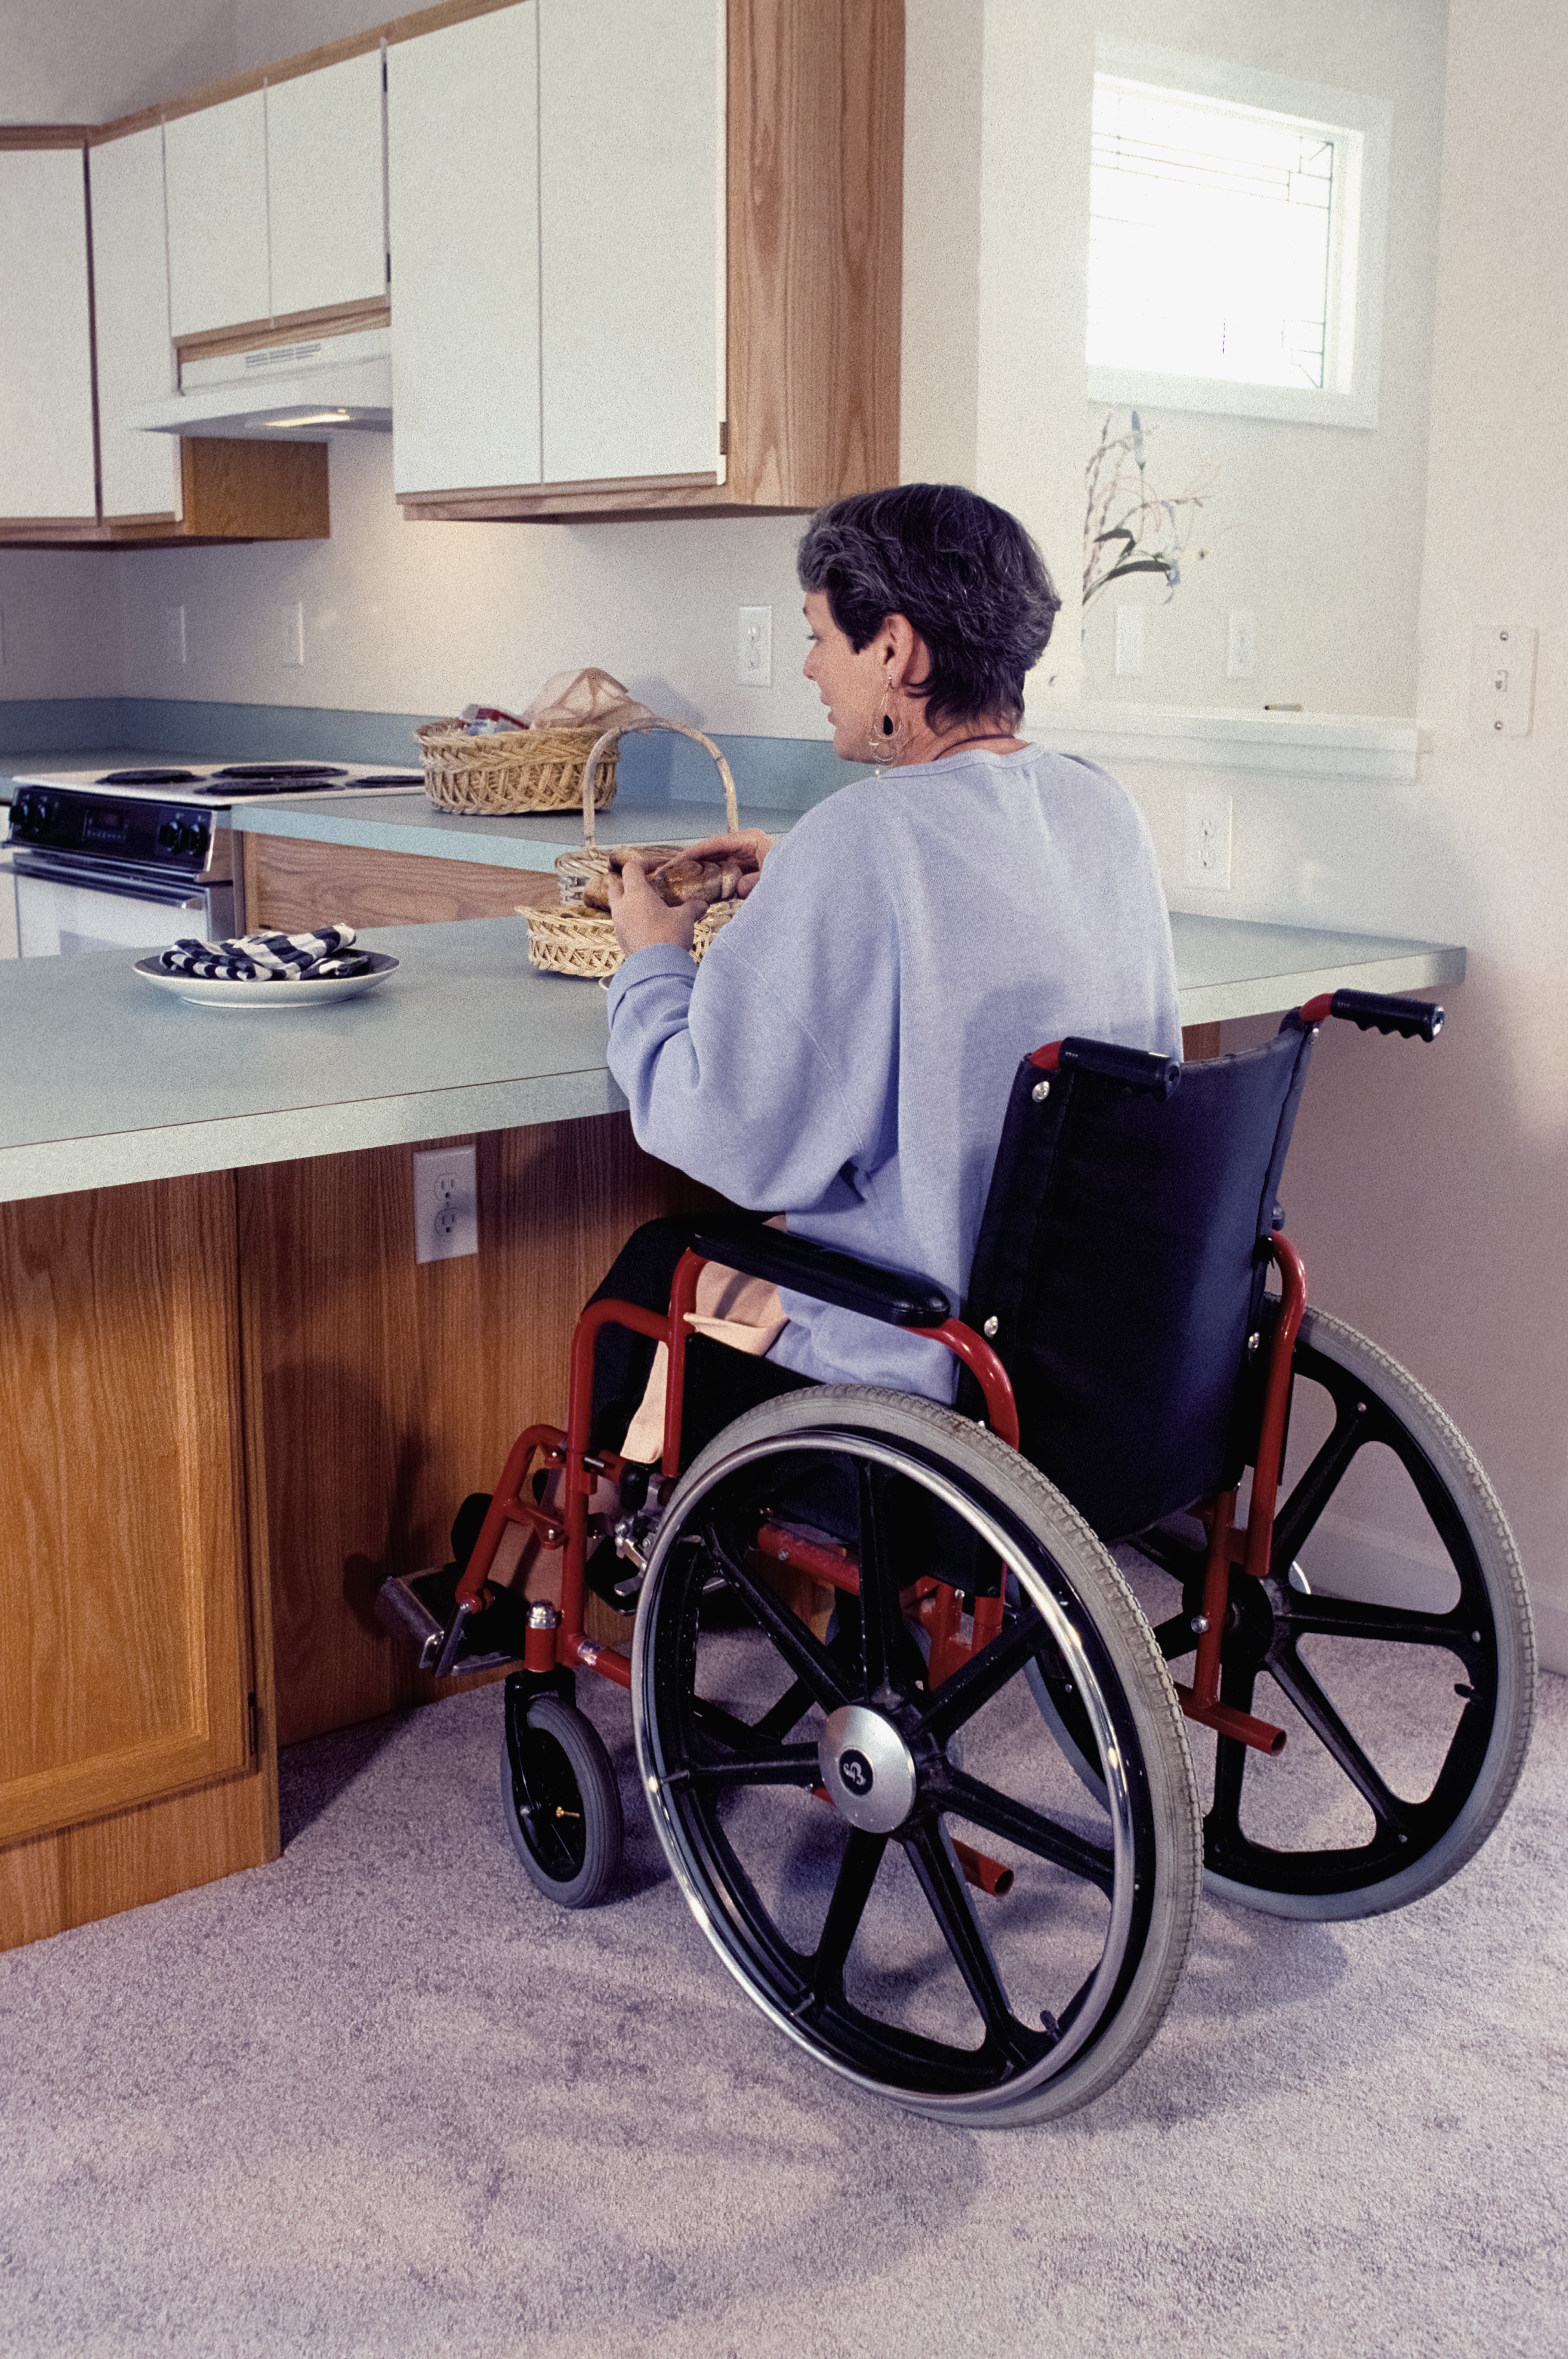 La femme qui avait commandé la nourriture était en fauteuil roulant. | Source : Unsplash